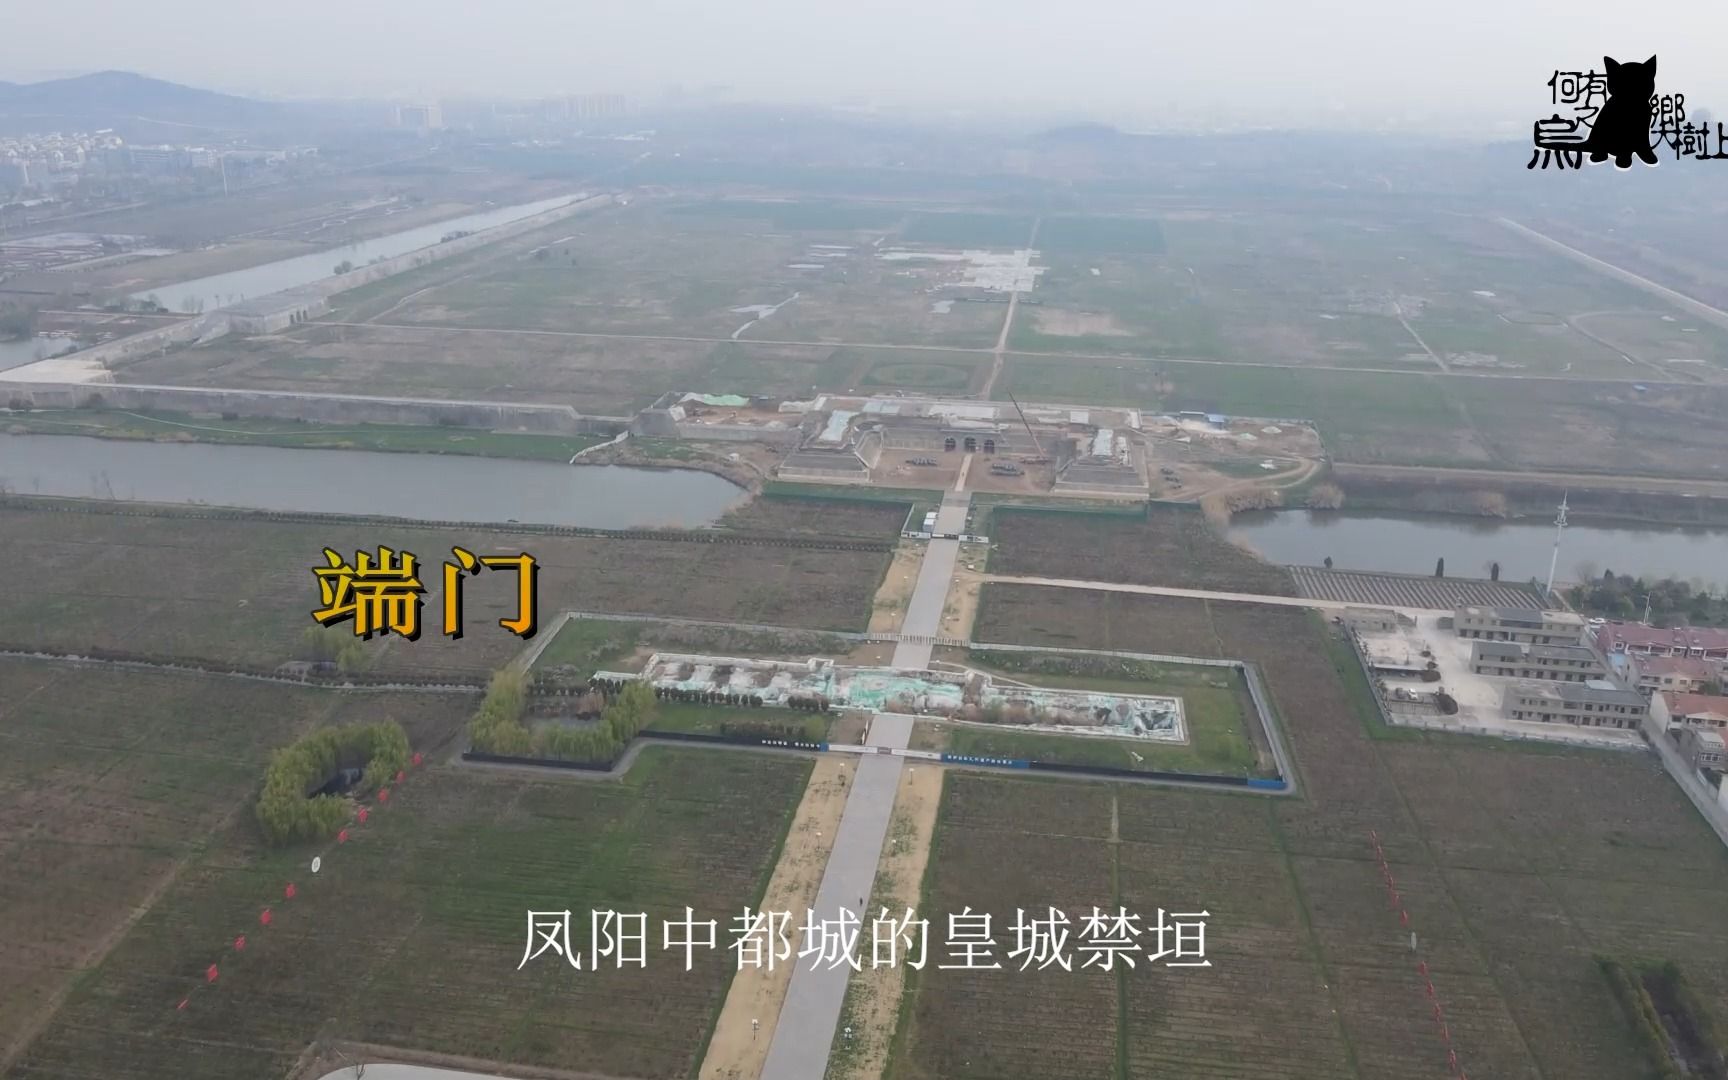 航拍凤阳明中都皇城遗址,北京故宫仿照它建造,究竟有何玄妙?